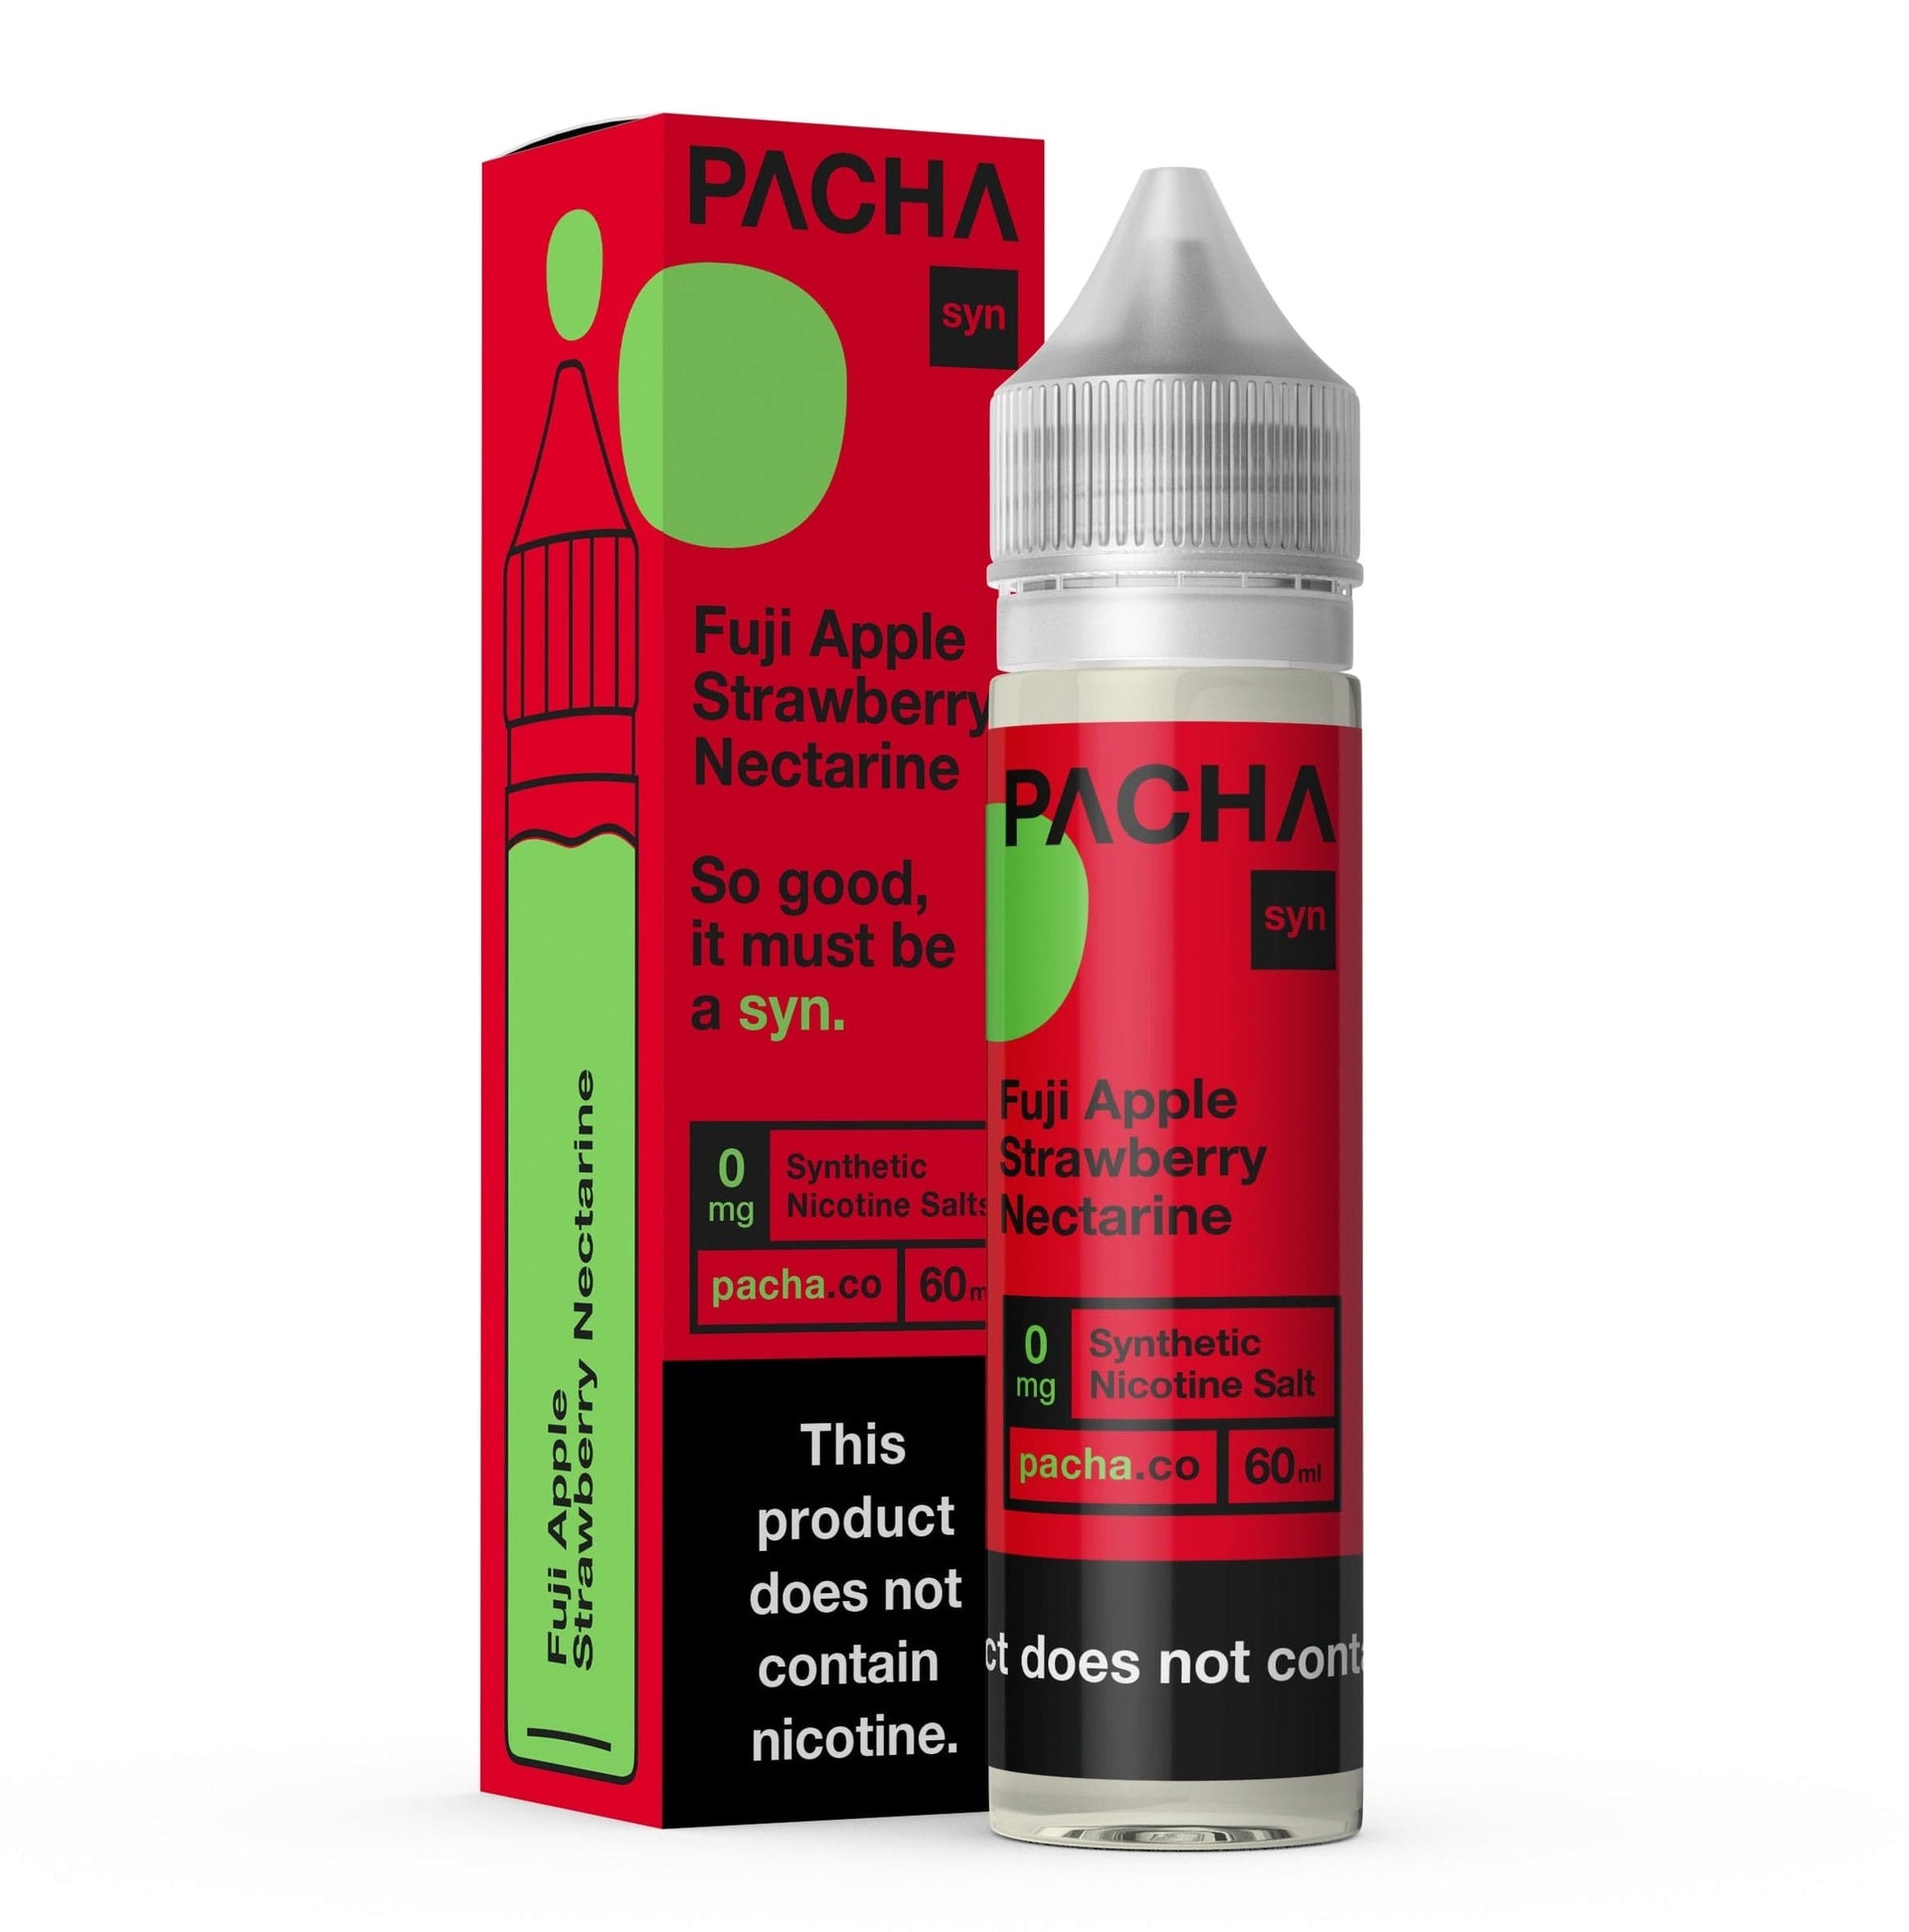 Pachamama Fuji Apple Strawberry Nectarine 60ml Vape Juice (0mg)